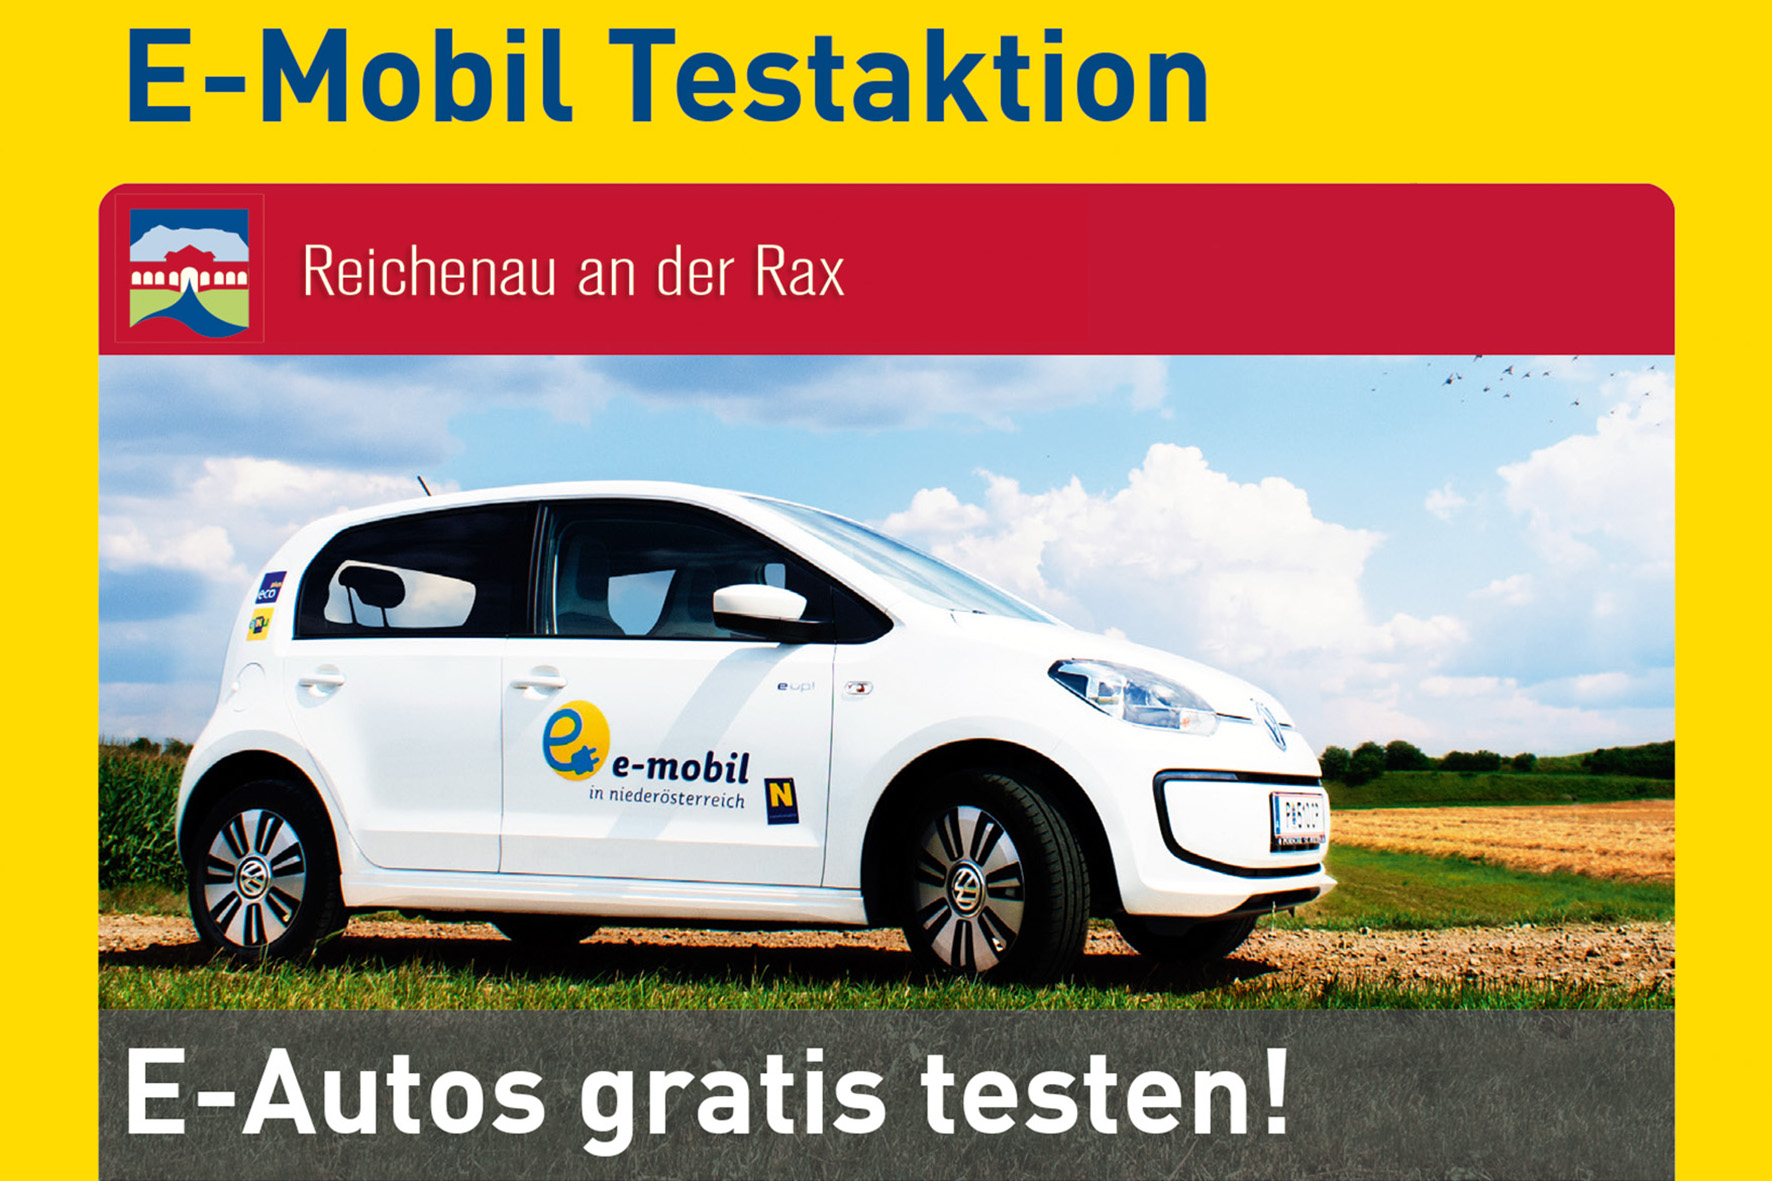 e-Mobil Testaktion, Reichenau